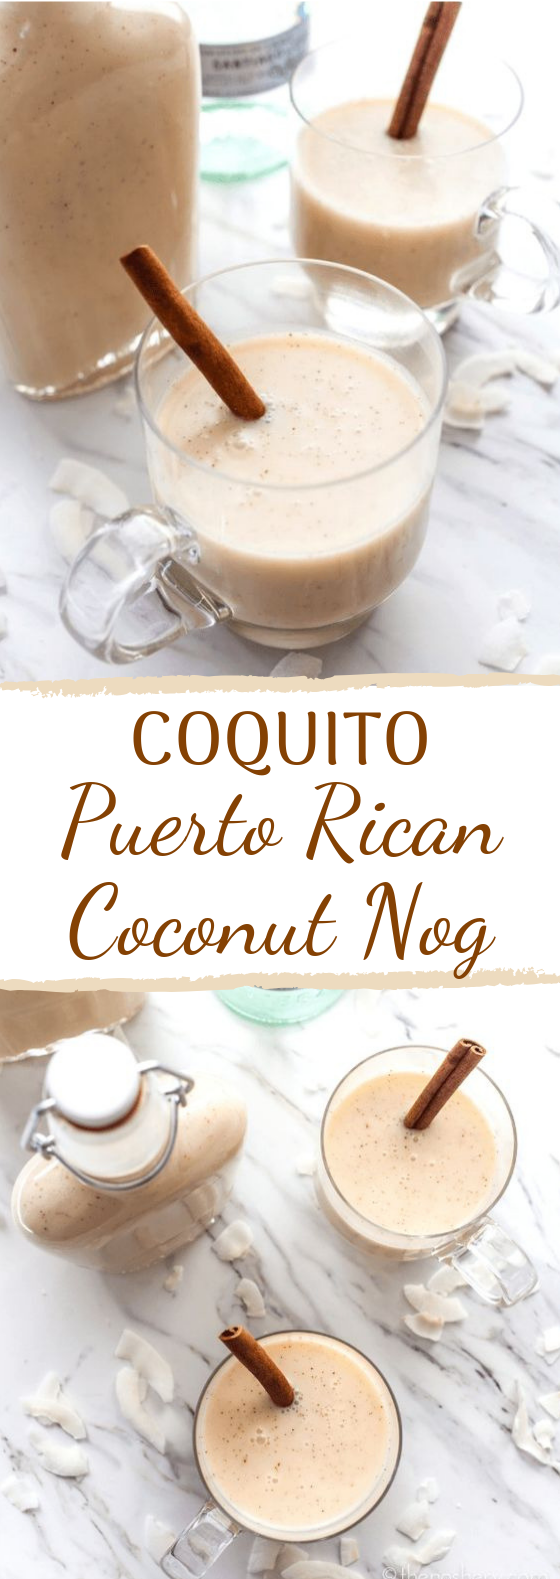 Coquito: Puerto Rican Coconut Nog #winter #warmdrink